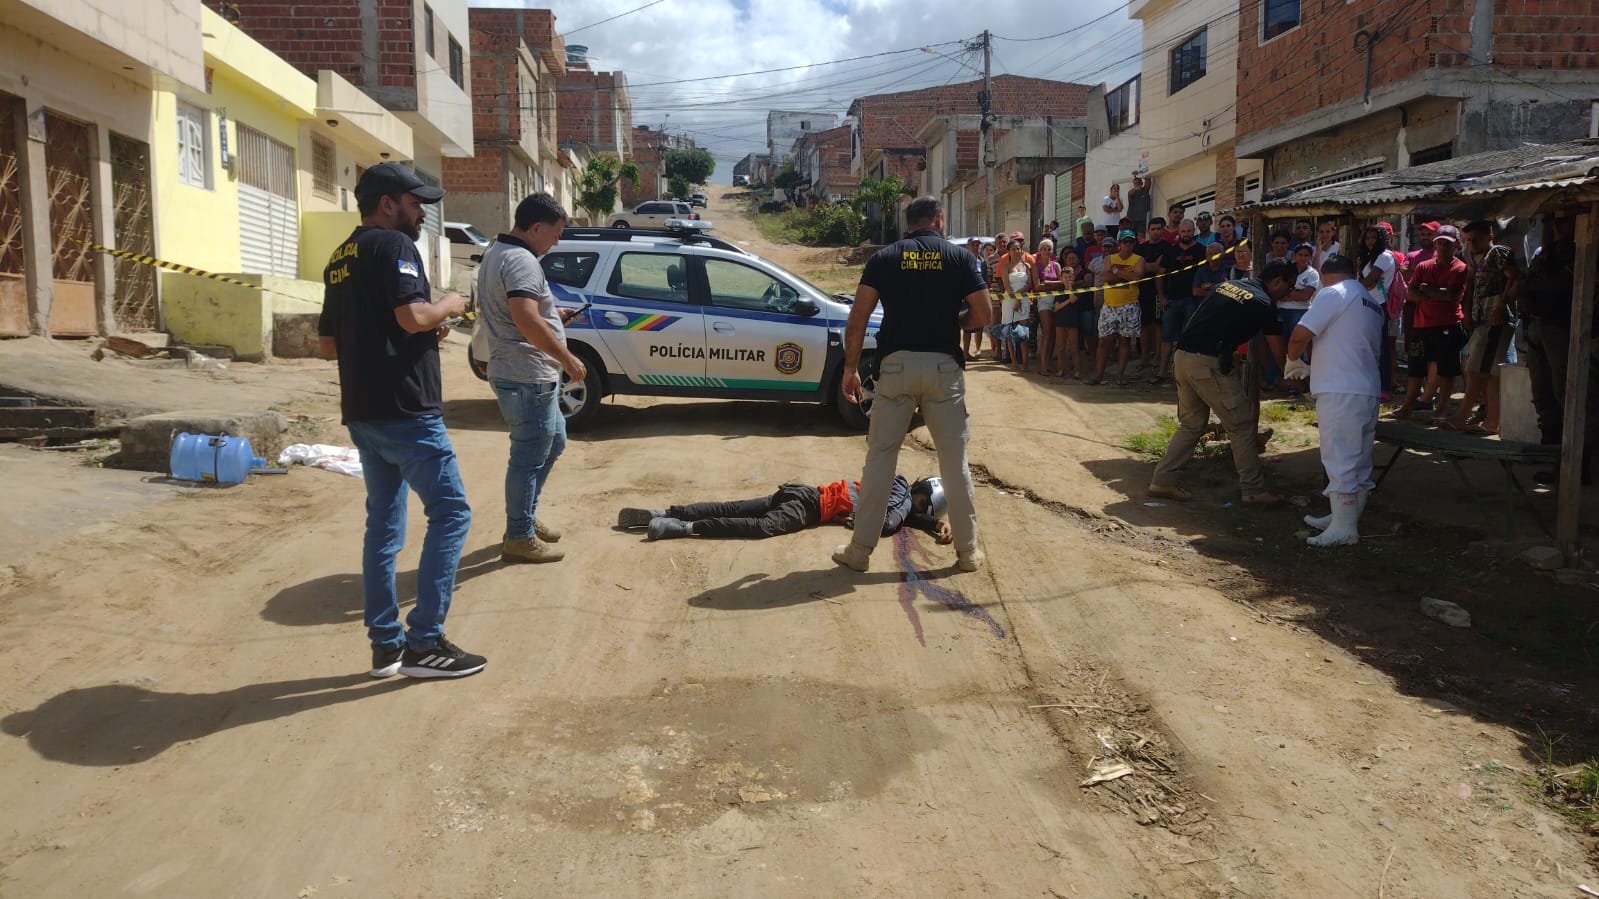 Covardia: Criminoso rouba e executa vendedor de água a tiros em Caruaru